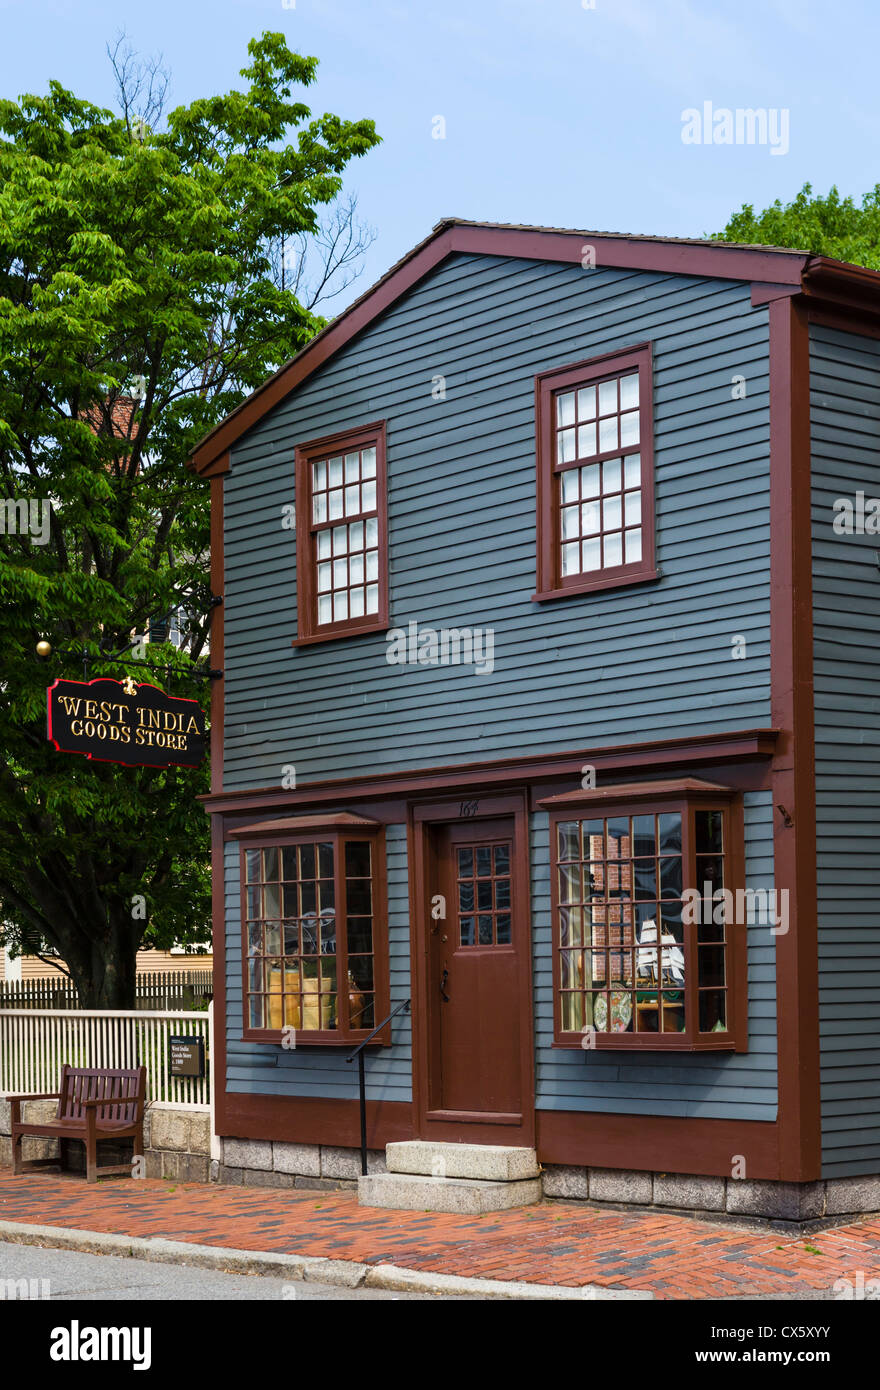 El almacén de mercancías de la India occidental, un edificio histórico en Derby Street, Salem, Massachusetts, EE.UU. Foto de stock